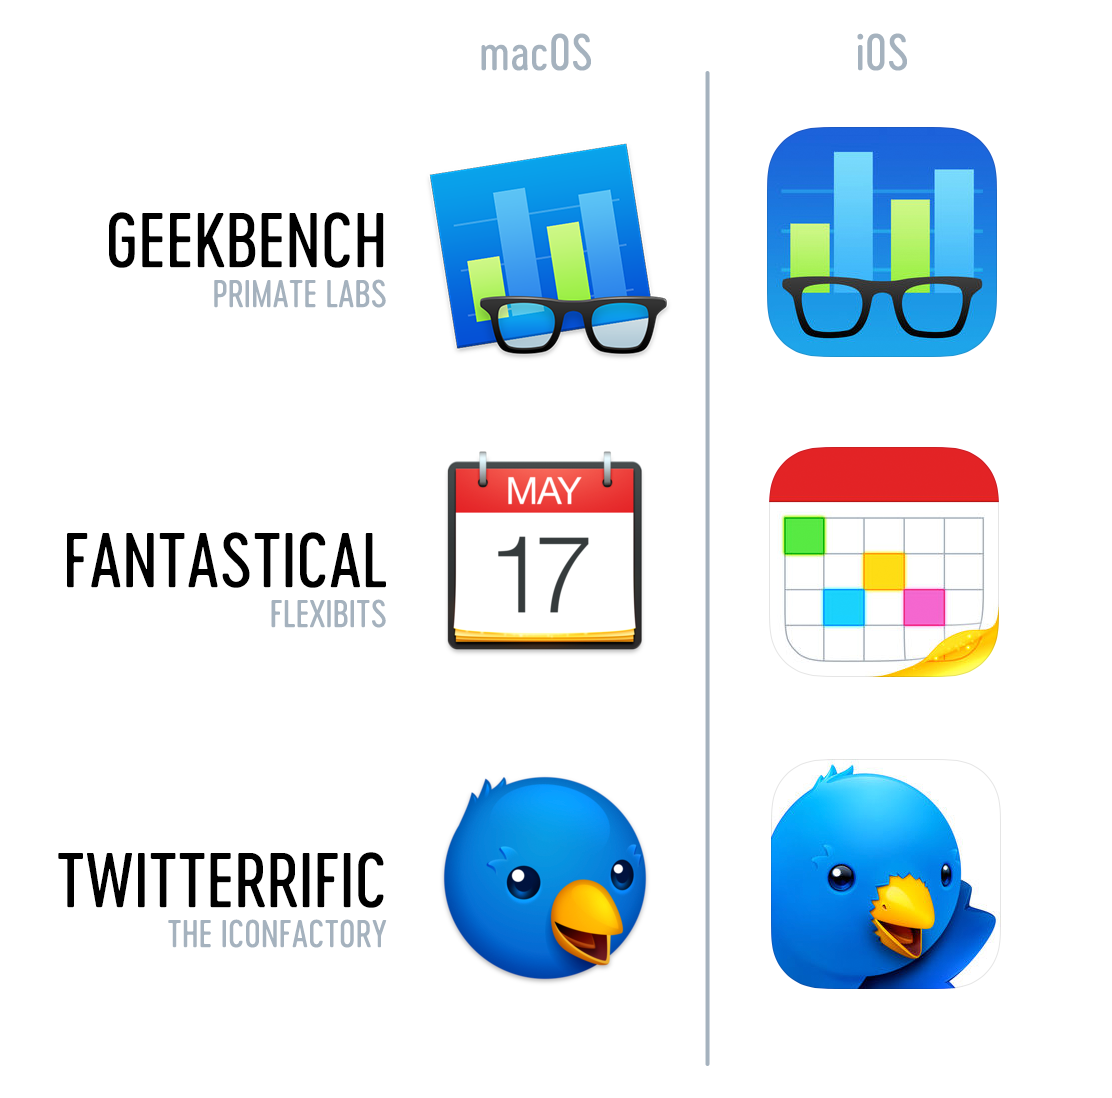 Iconfactory 设计的 macOS 和 iOS 图标示例